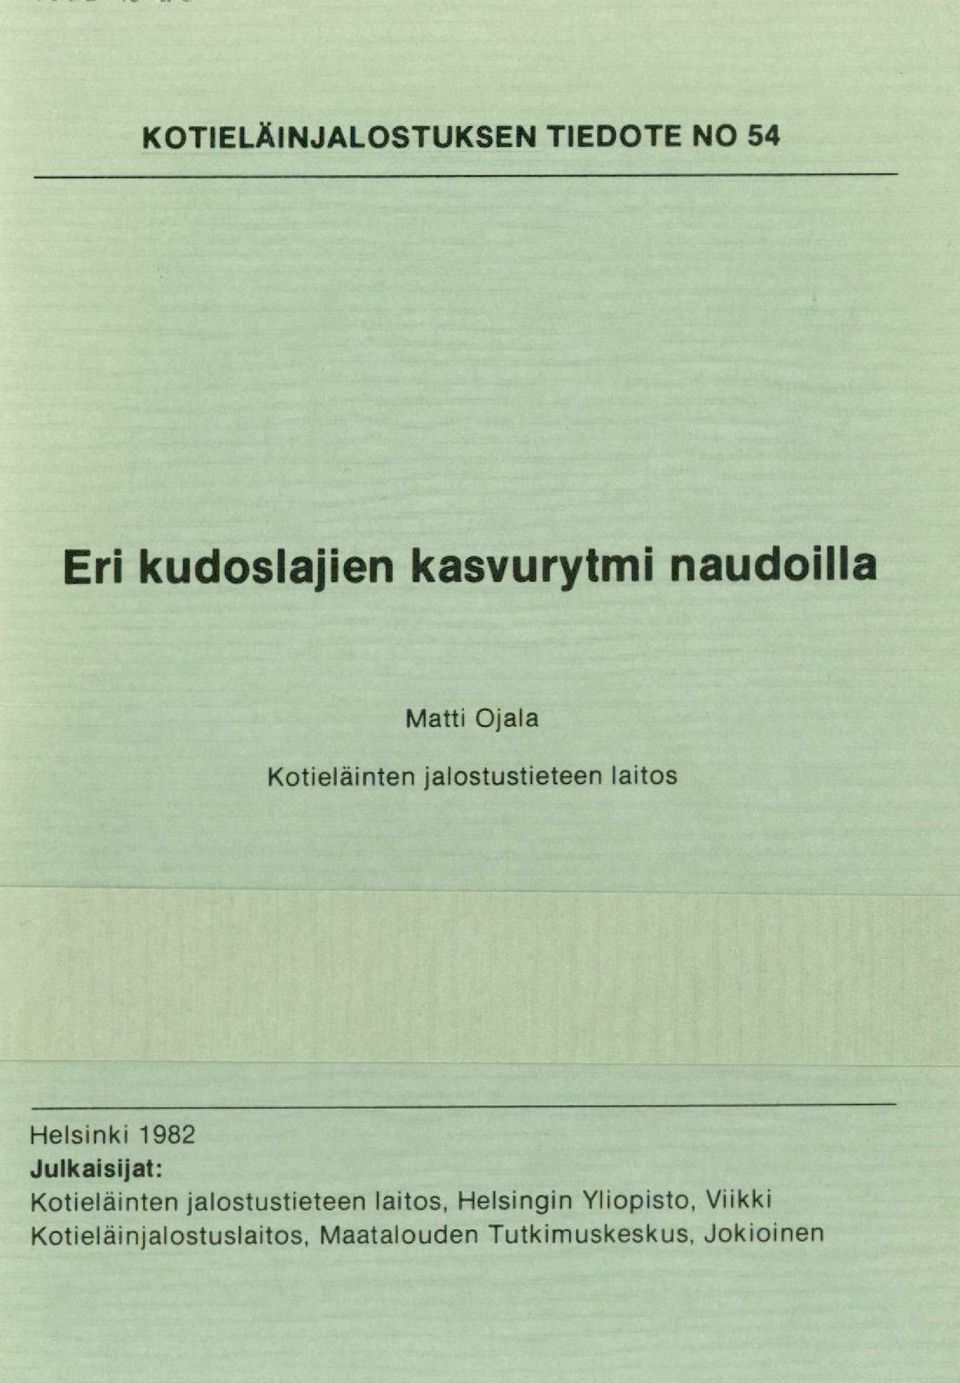 1982 Julkaisijat: Kotieläinten jalostustieteen laitos, Helsingin